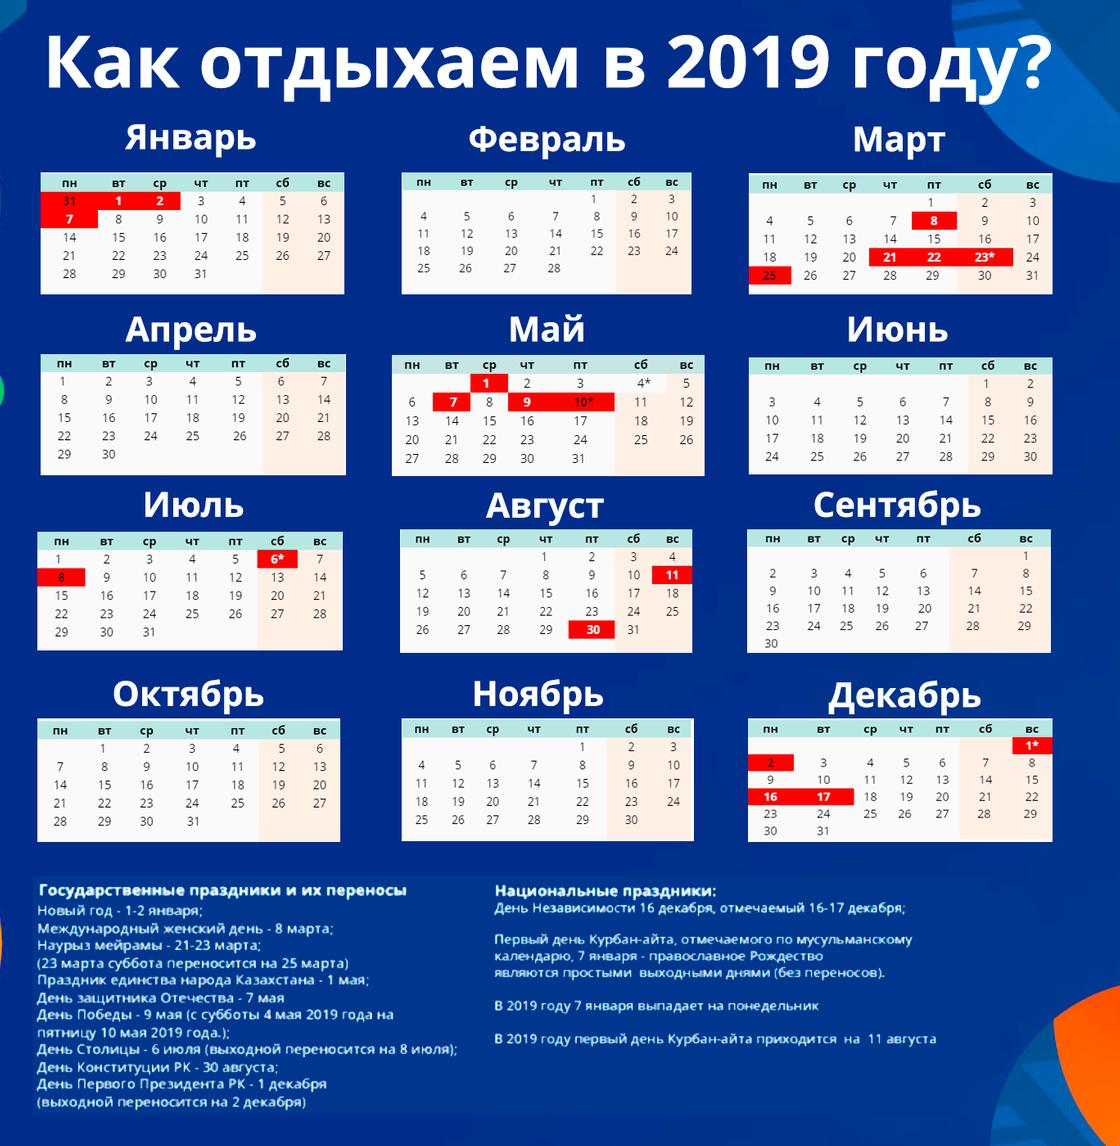 120 дней отдохнут казахстанцы в 2019 году